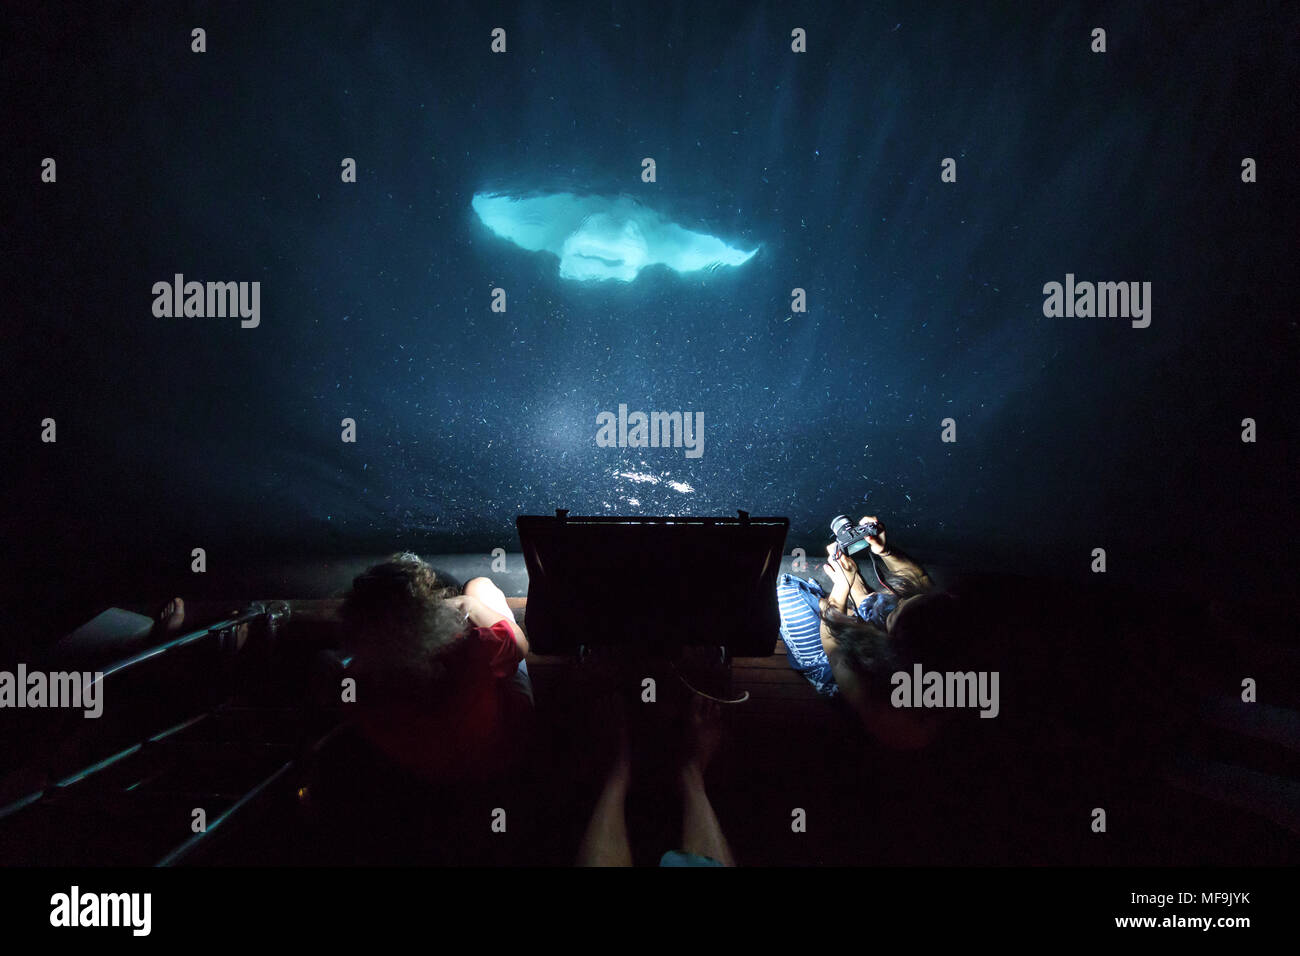 Manta Ray aspire de plancton dans la nuit par l'arrière du bateau que les gens regardent dans le noir Banque D'Images